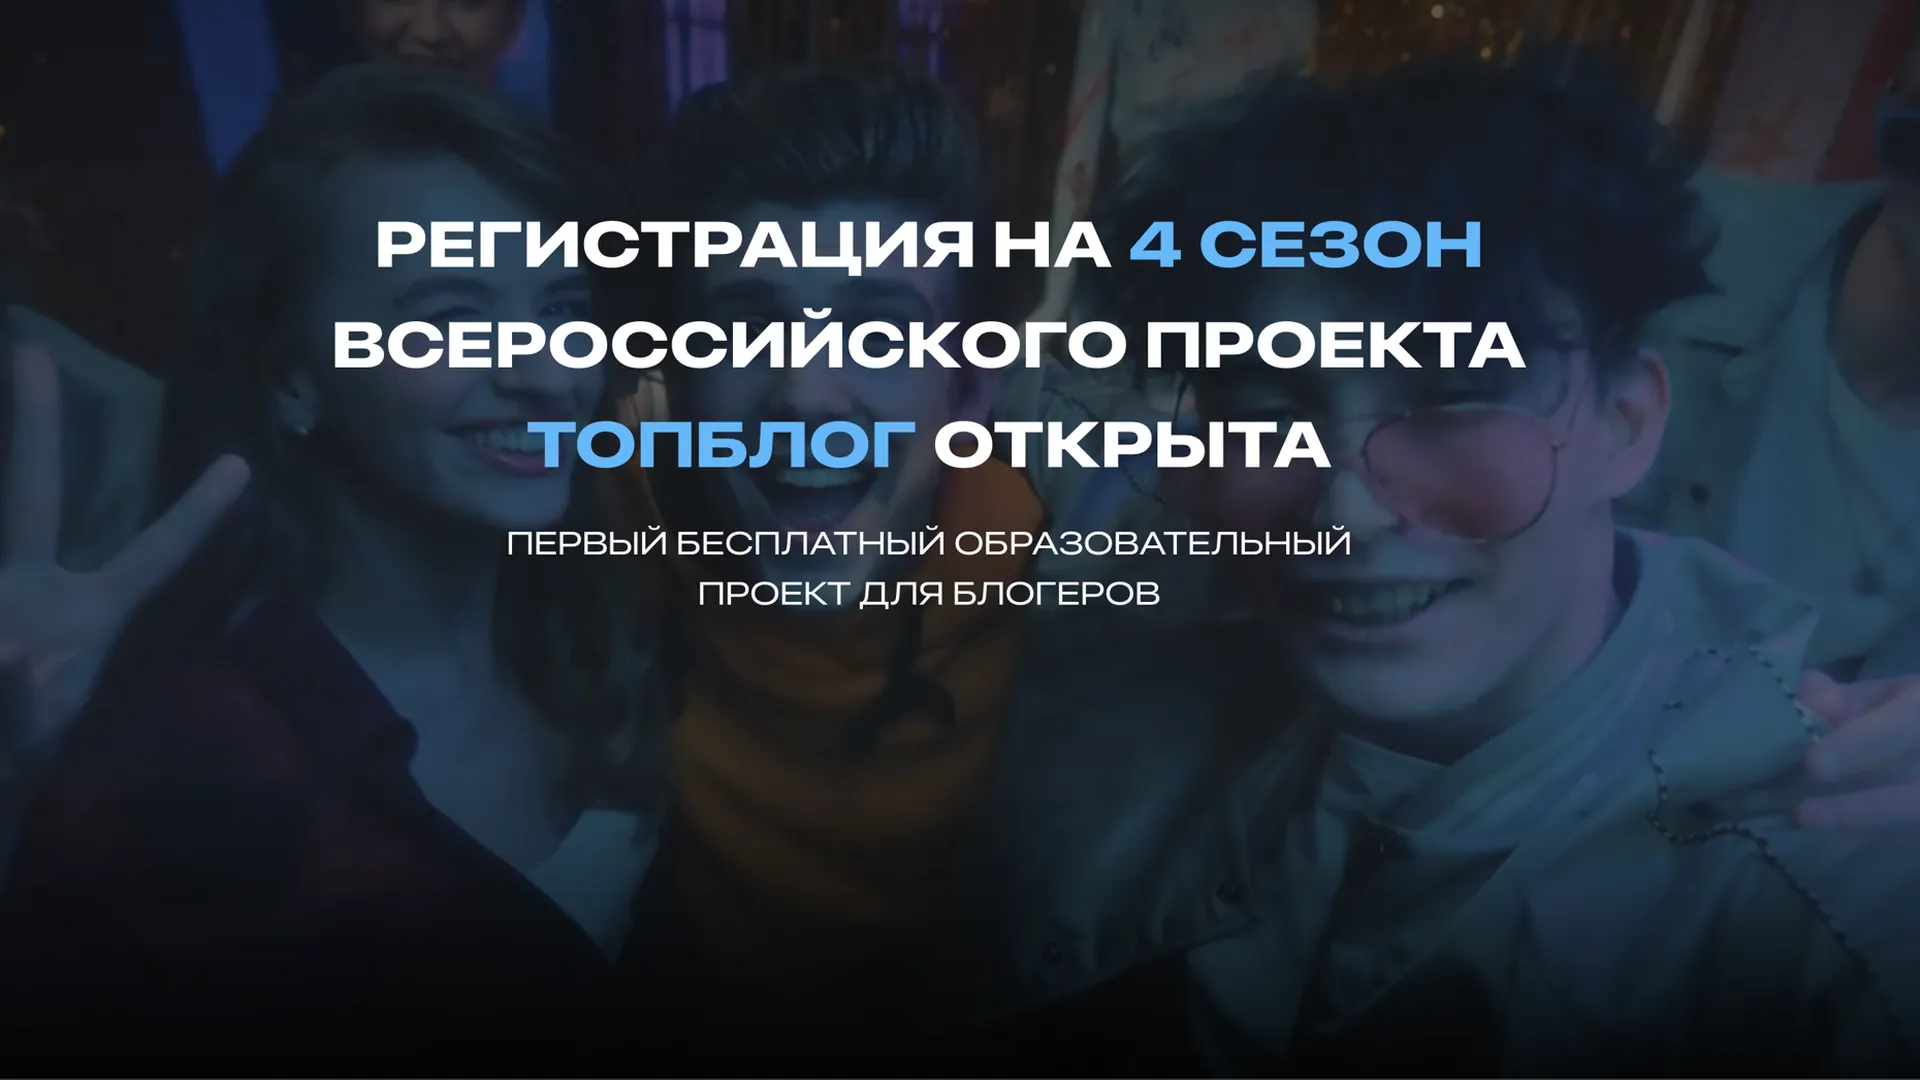 В Москве дали старт IV сезону всероссийского проекта «ТопБЛОГ»